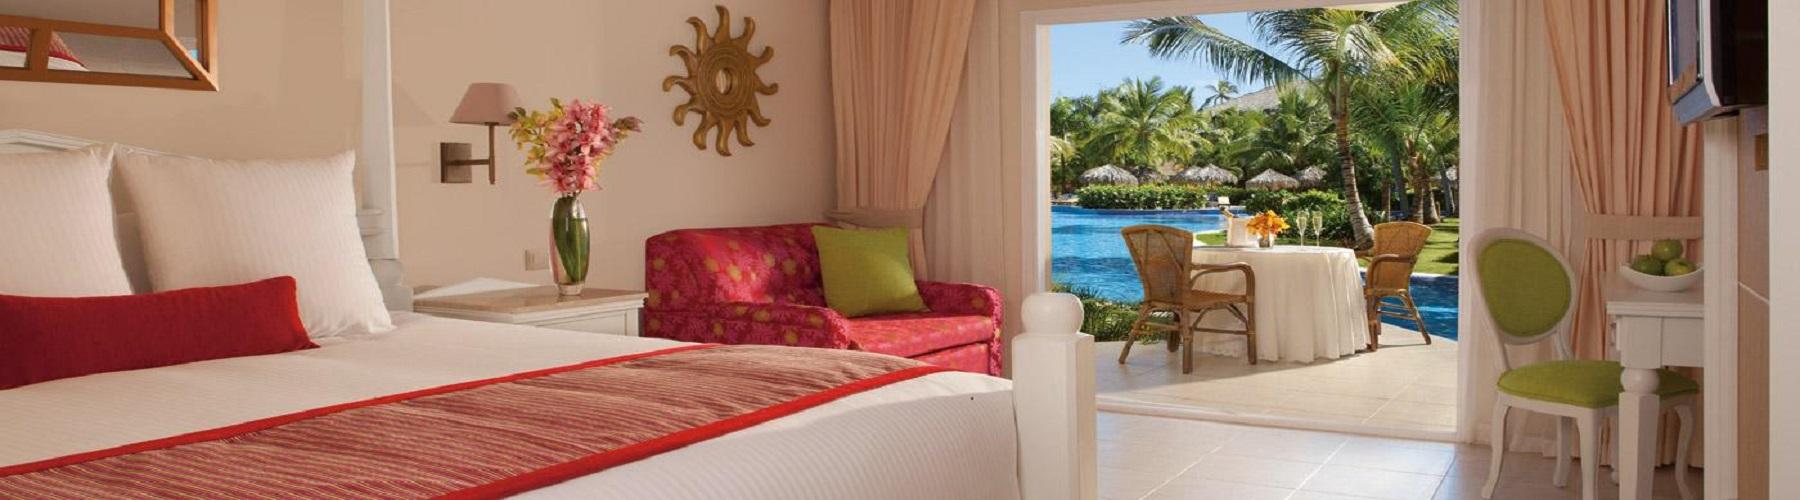 Забронировать отель Dreams Punta Cana 5*